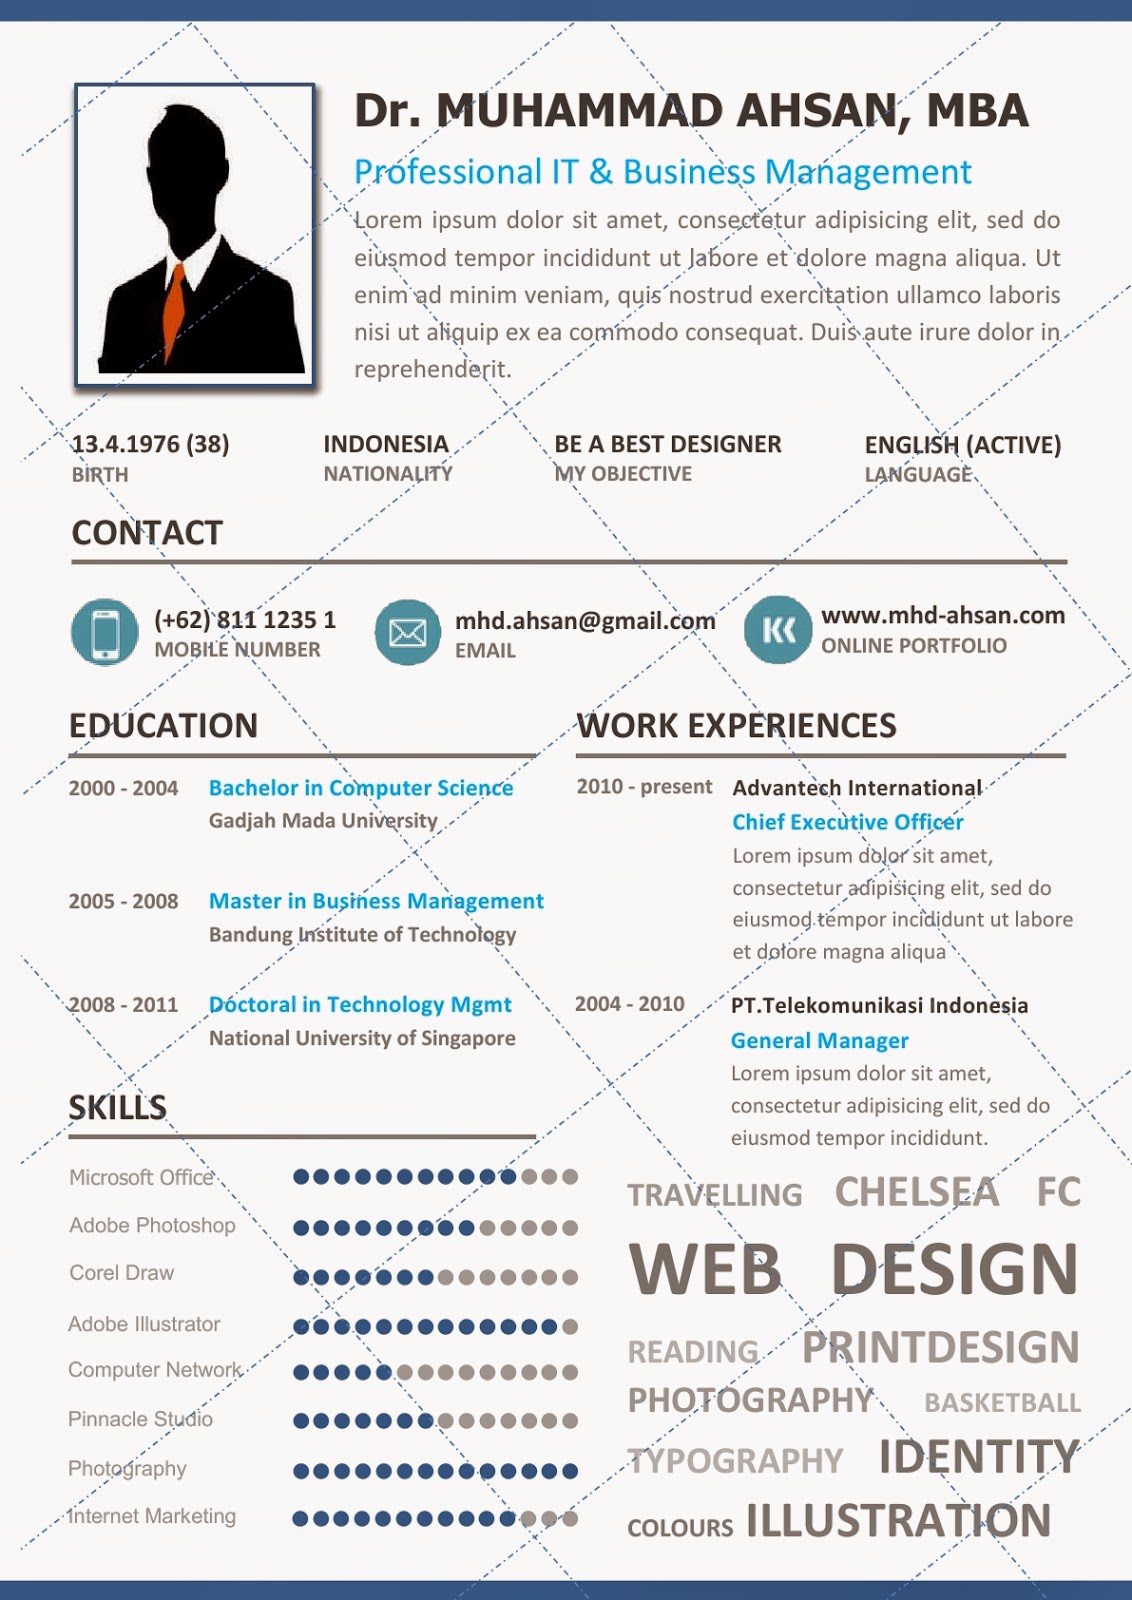 Desain CV Kreatif: Clarion - Contoh Resume Template